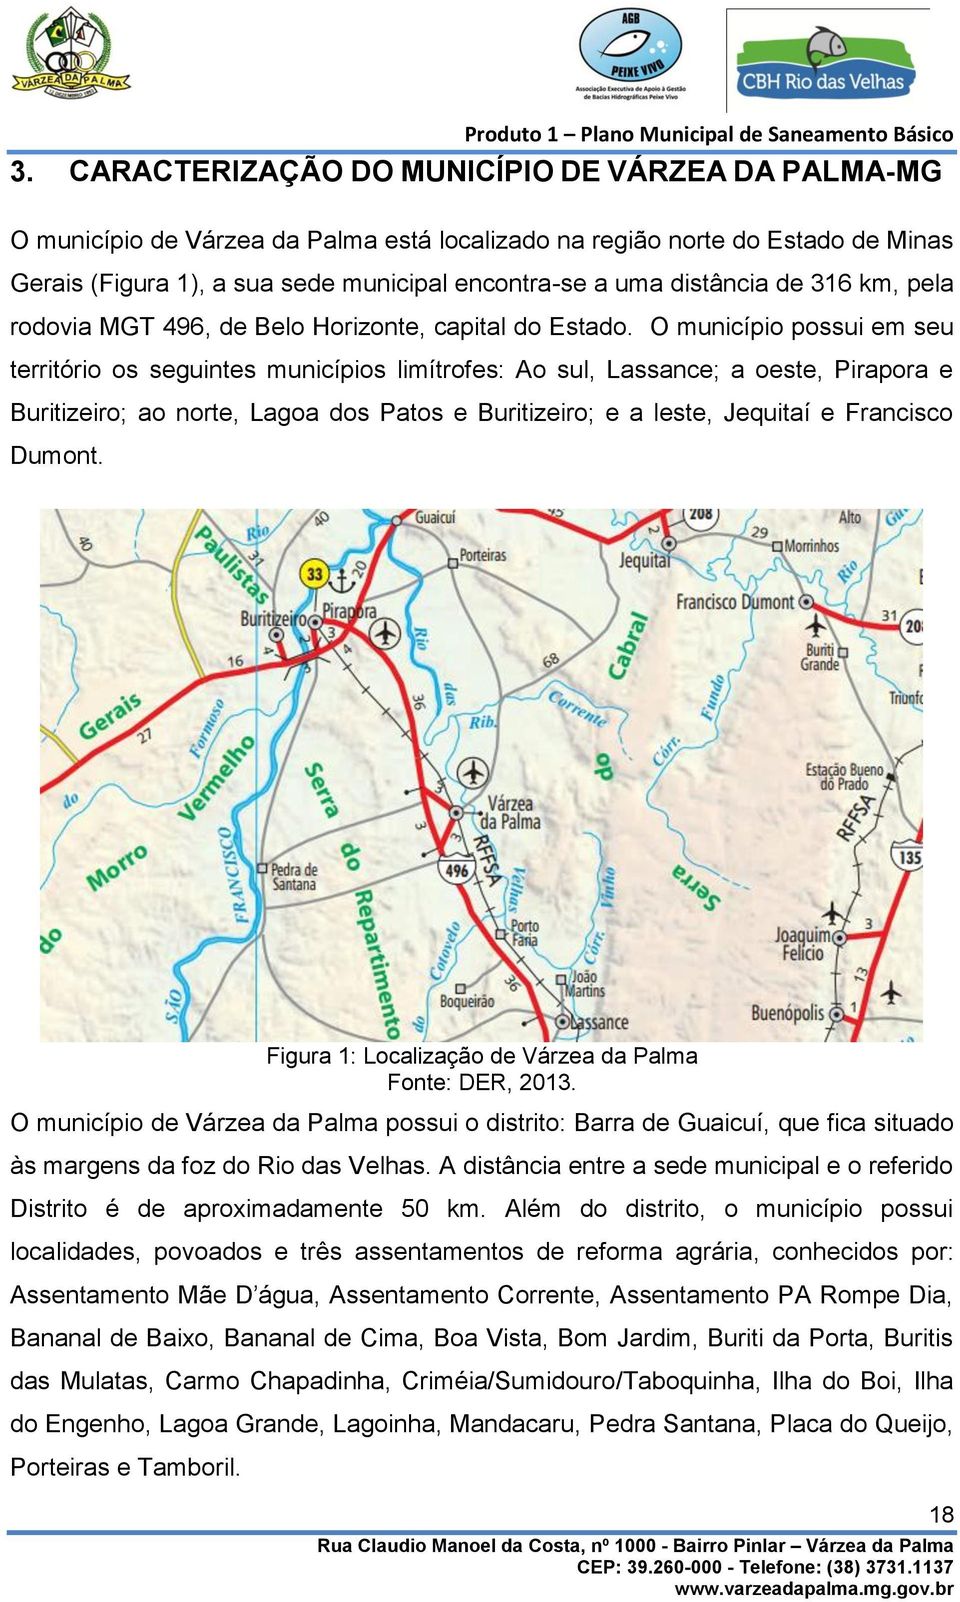 O município possui em seu território os seguintes municípios limítrofes: Ao sul, Lassance; a oeste, Pirapora e Buritizeiro; ao norte, Lagoa dos Patos e Buritizeiro; e a leste, Jequitaí e Francisco